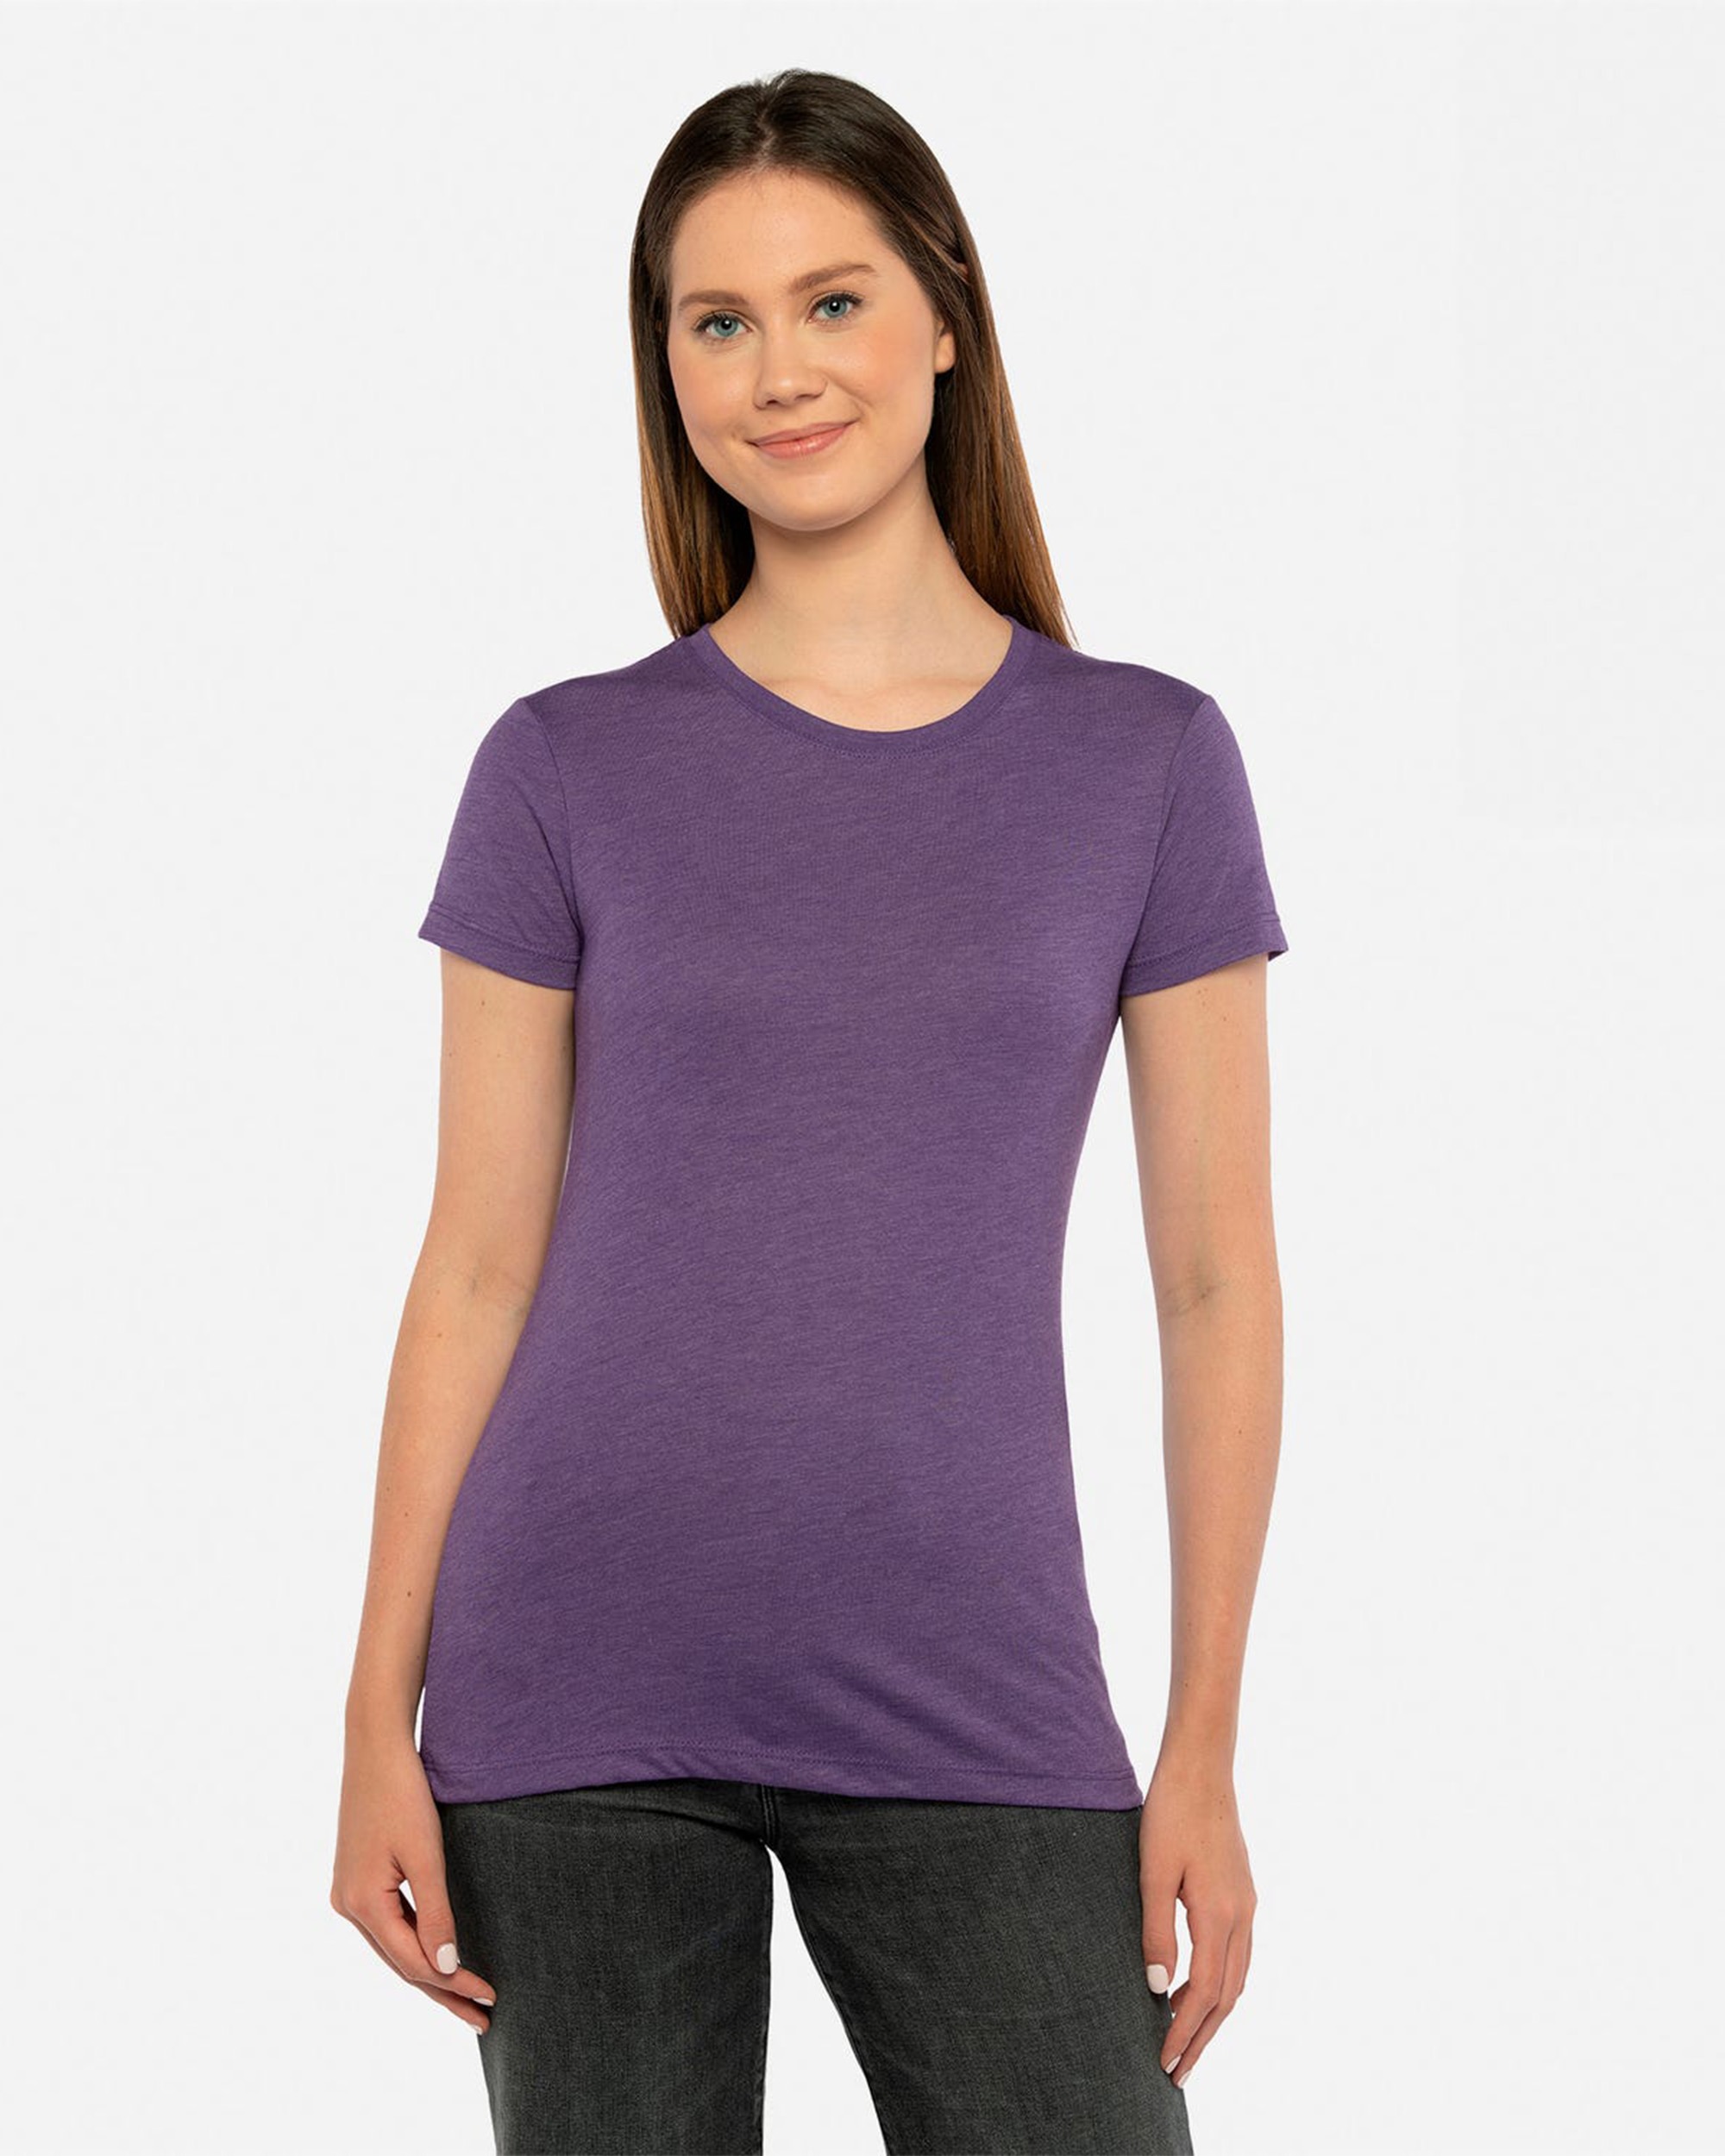 Next Level Apparel® 6710 Women's Tri-Blend T-Shirt